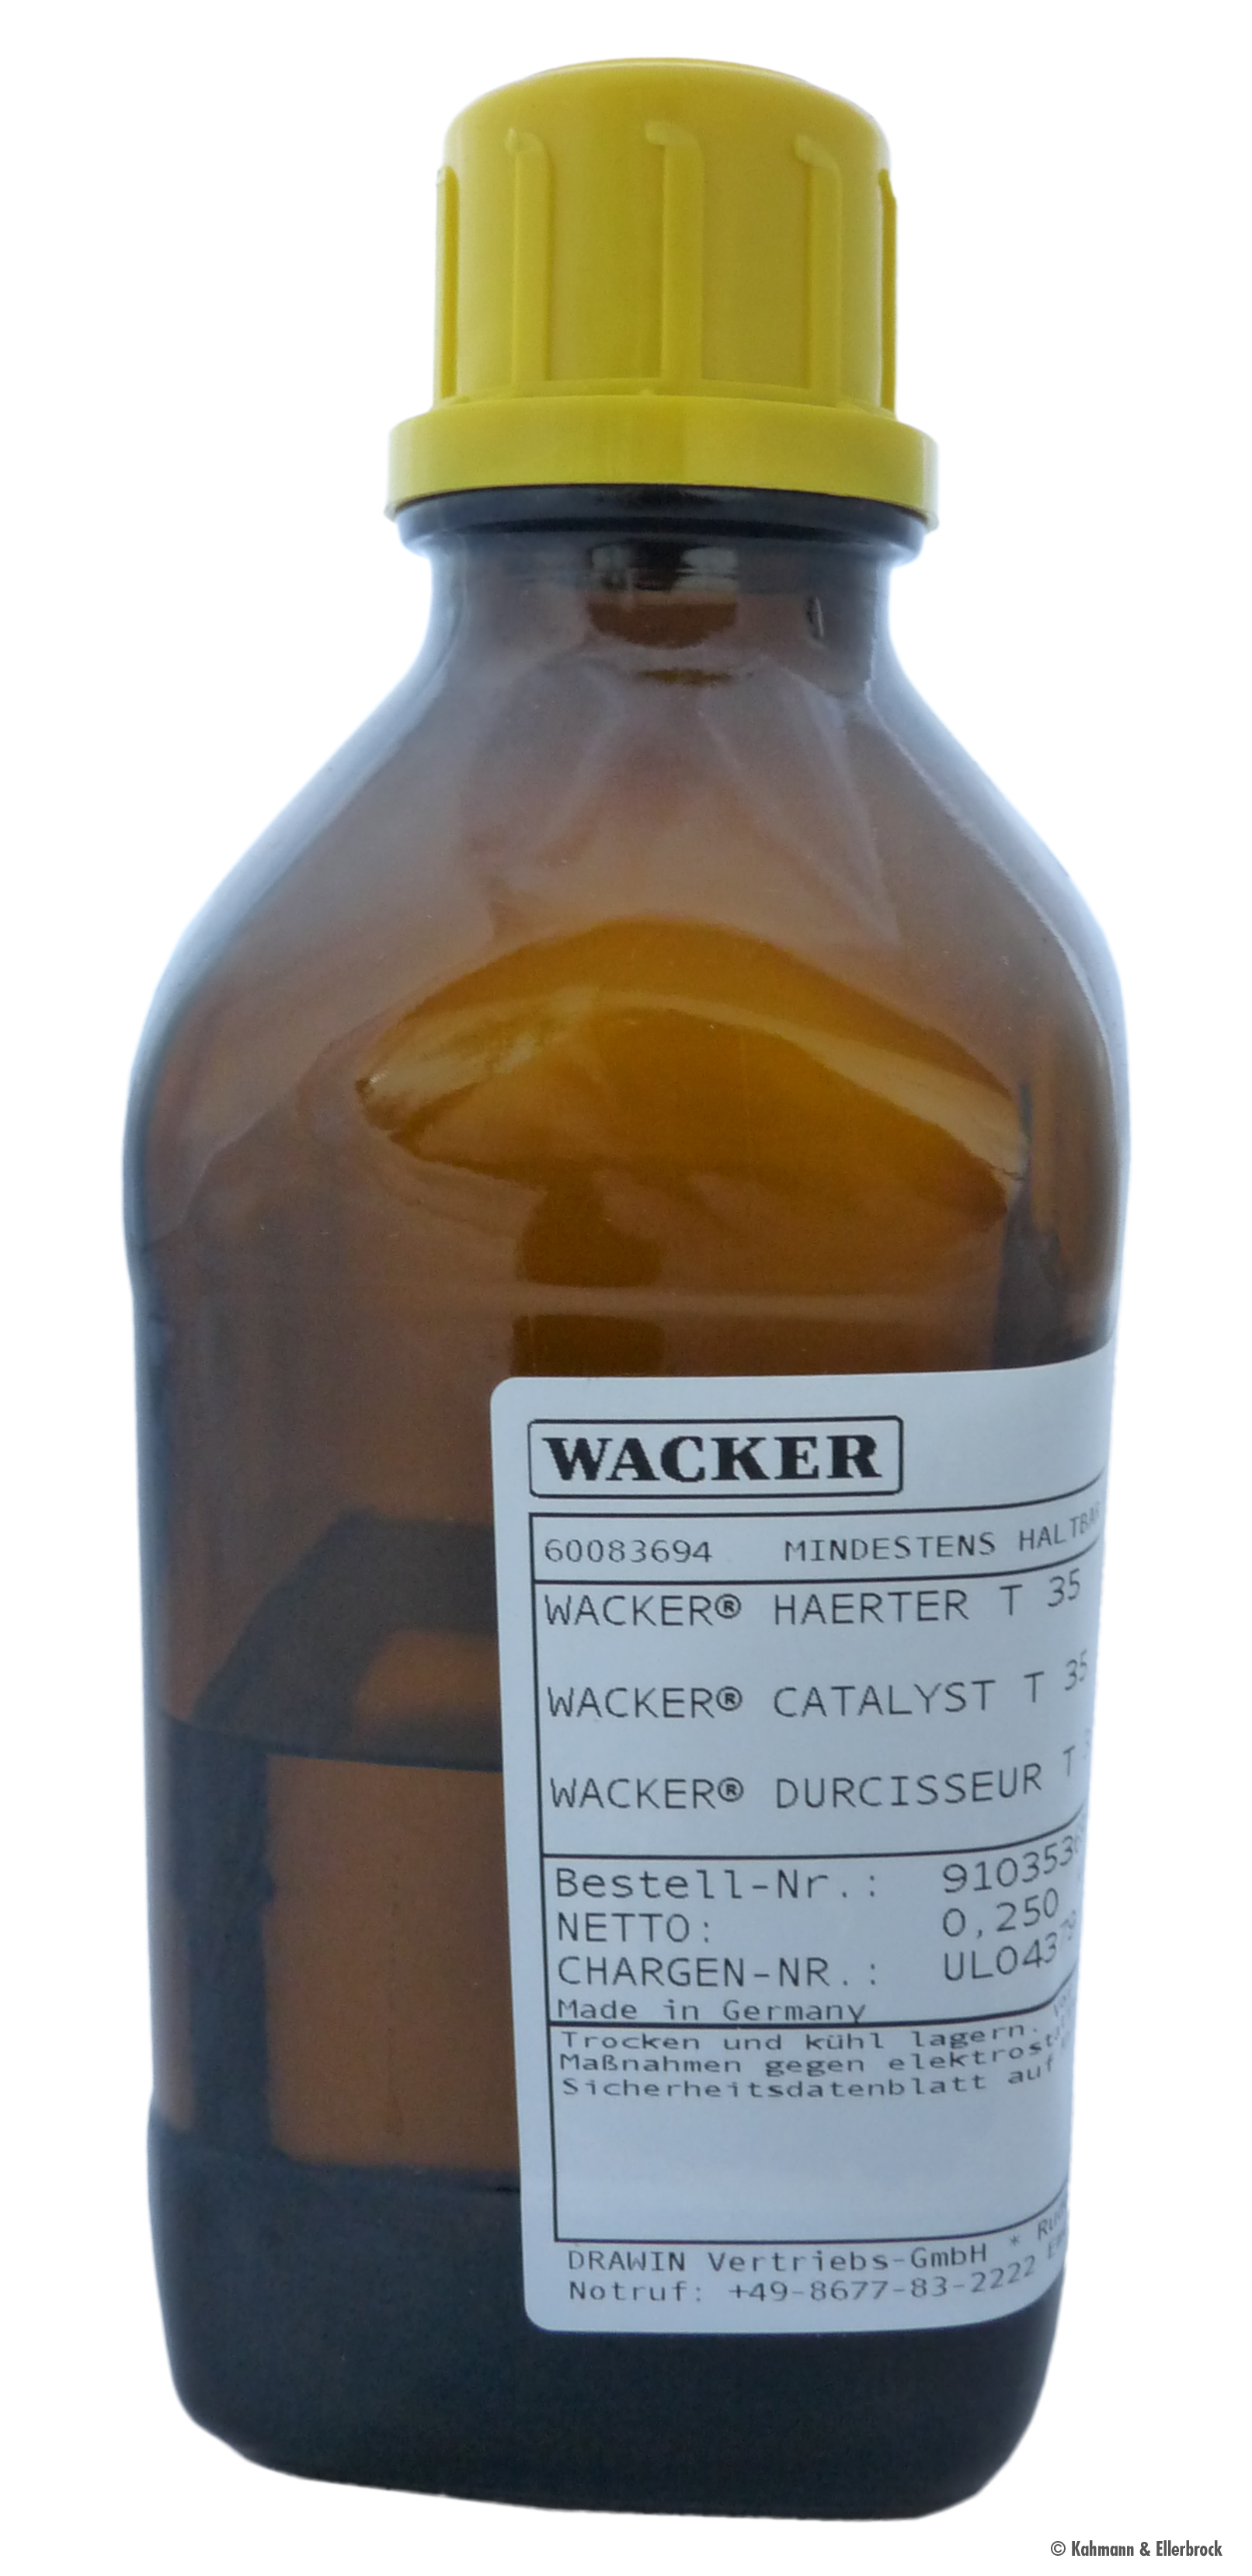 Wacker® Härter T 35